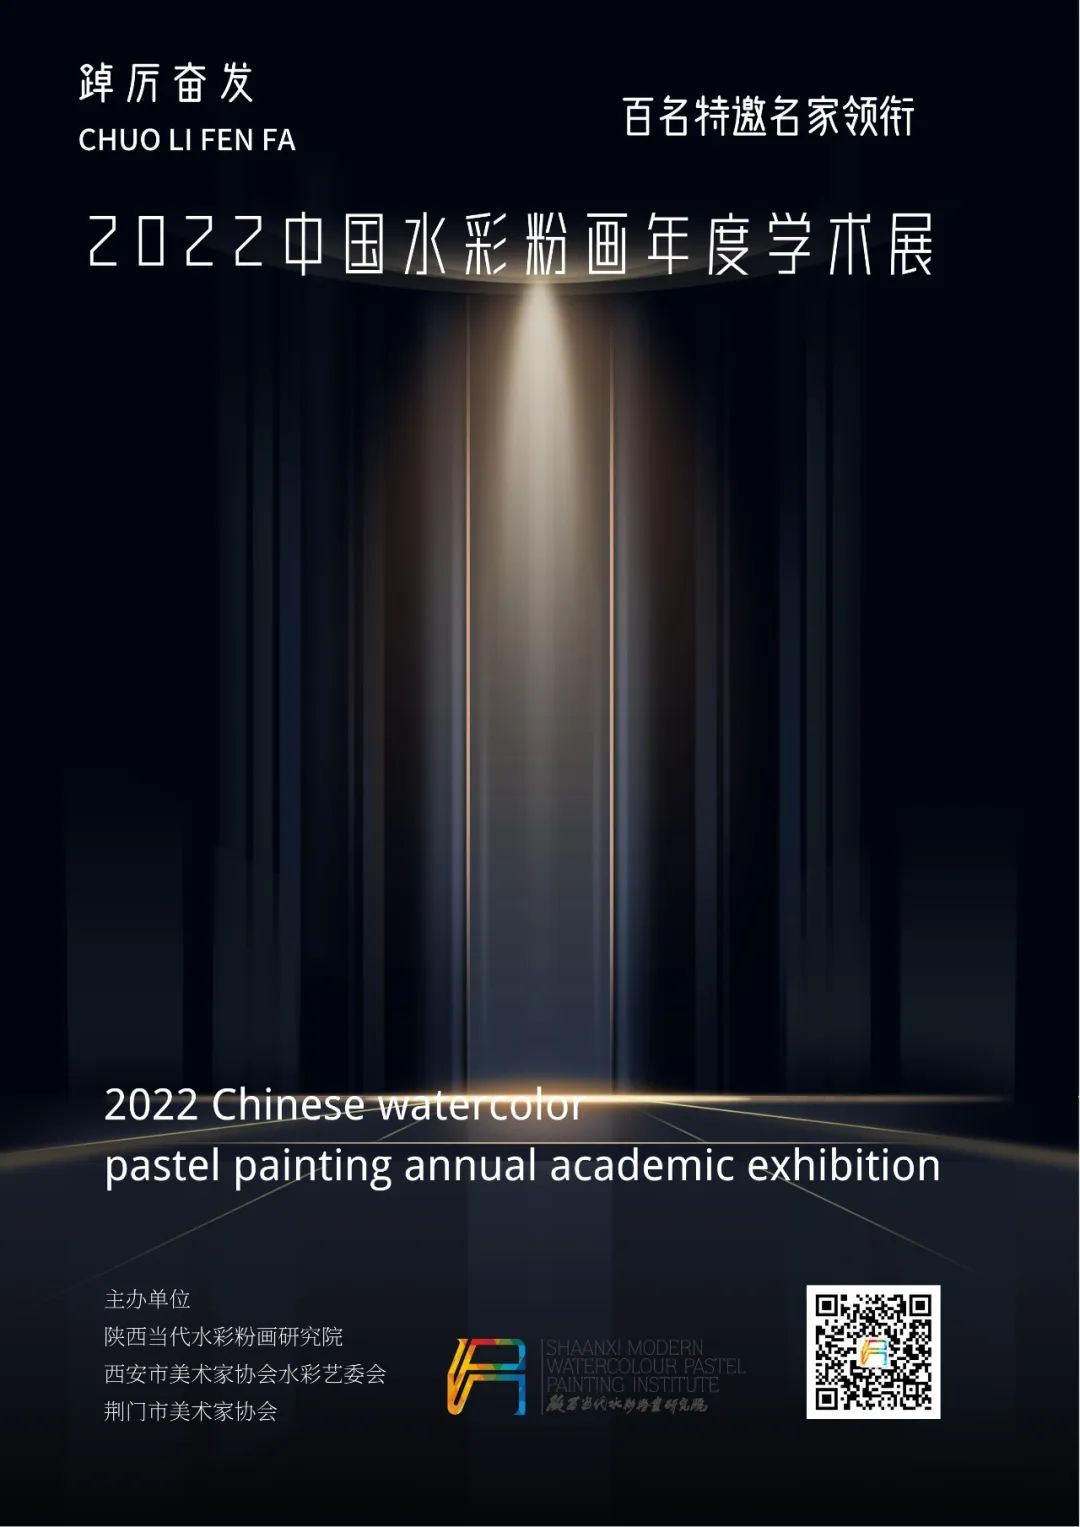 踔厉奋发·2022中国水彩粉画年度学术展征稿通知 | 百名特邀艺术家领衔(图1)